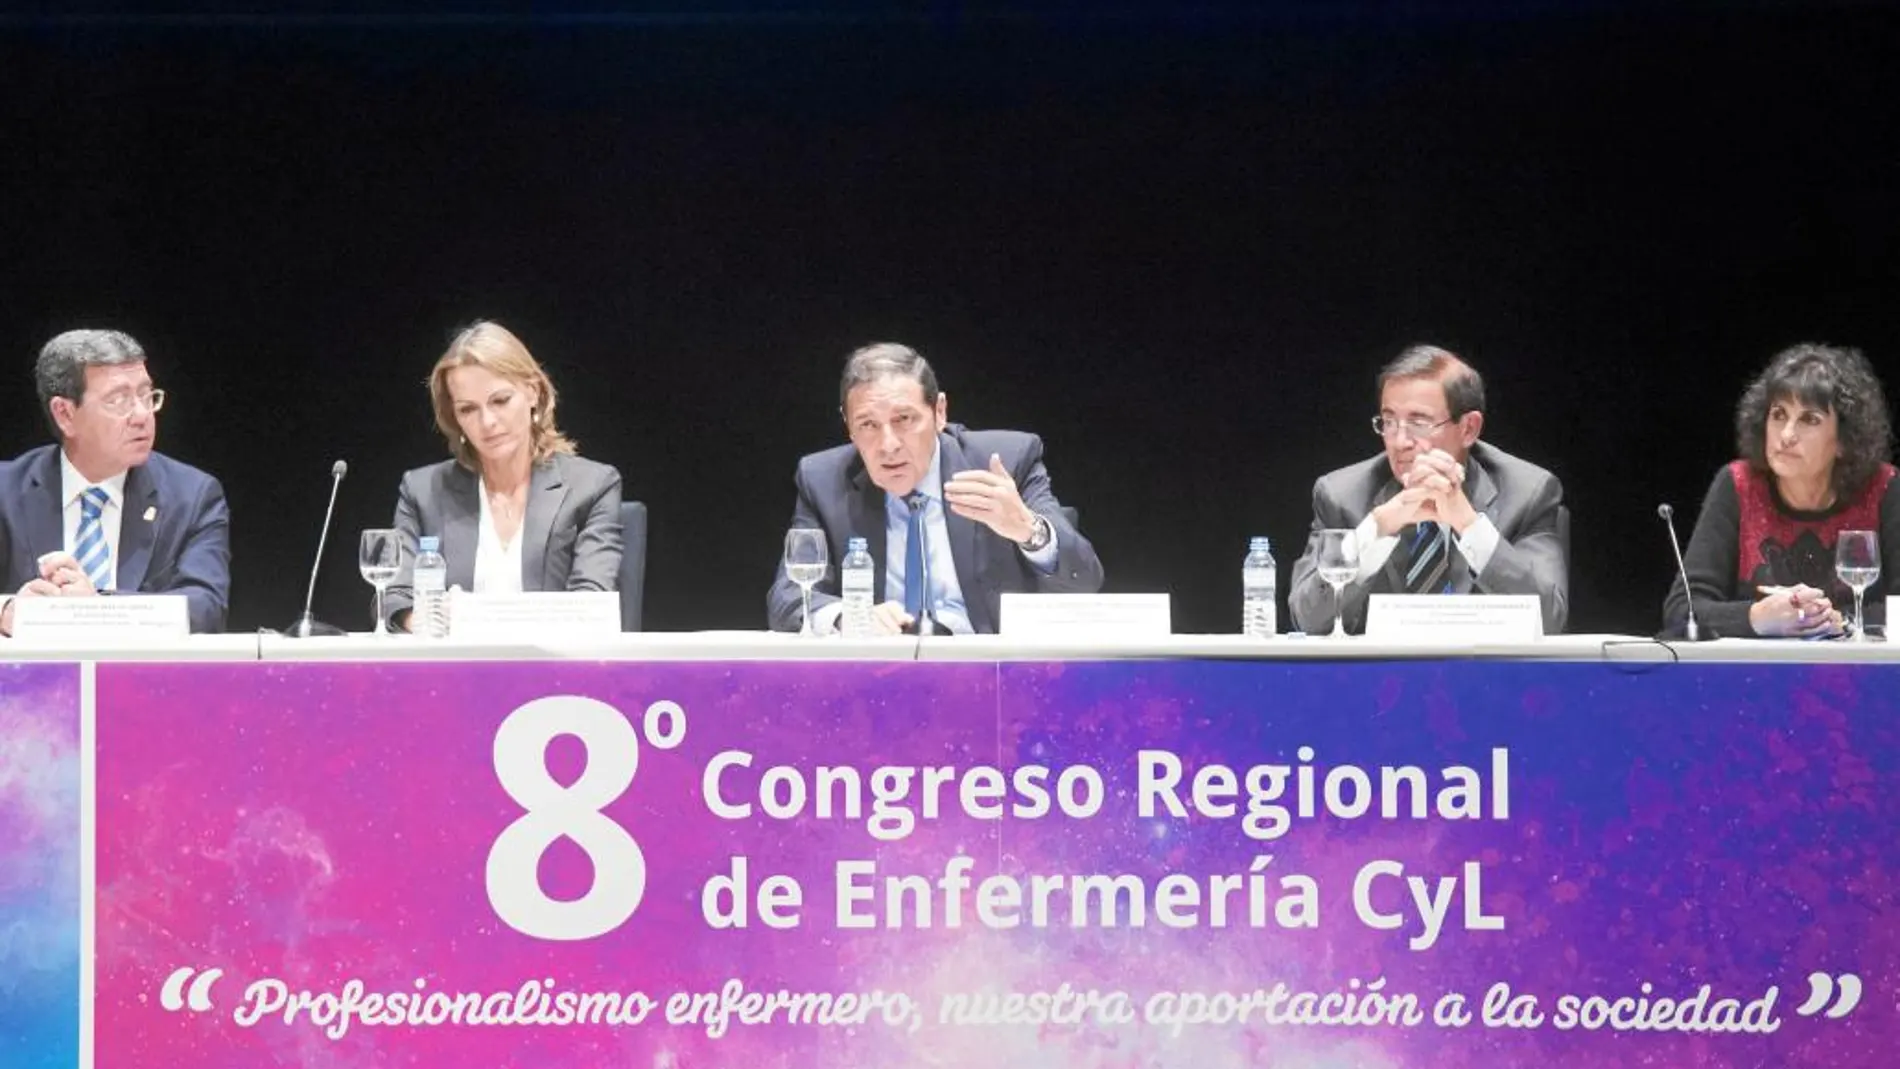 Sáez Aguado interviene en la presentación del congreso en presencia de César Rico y Alfredo Escaja, entre otros